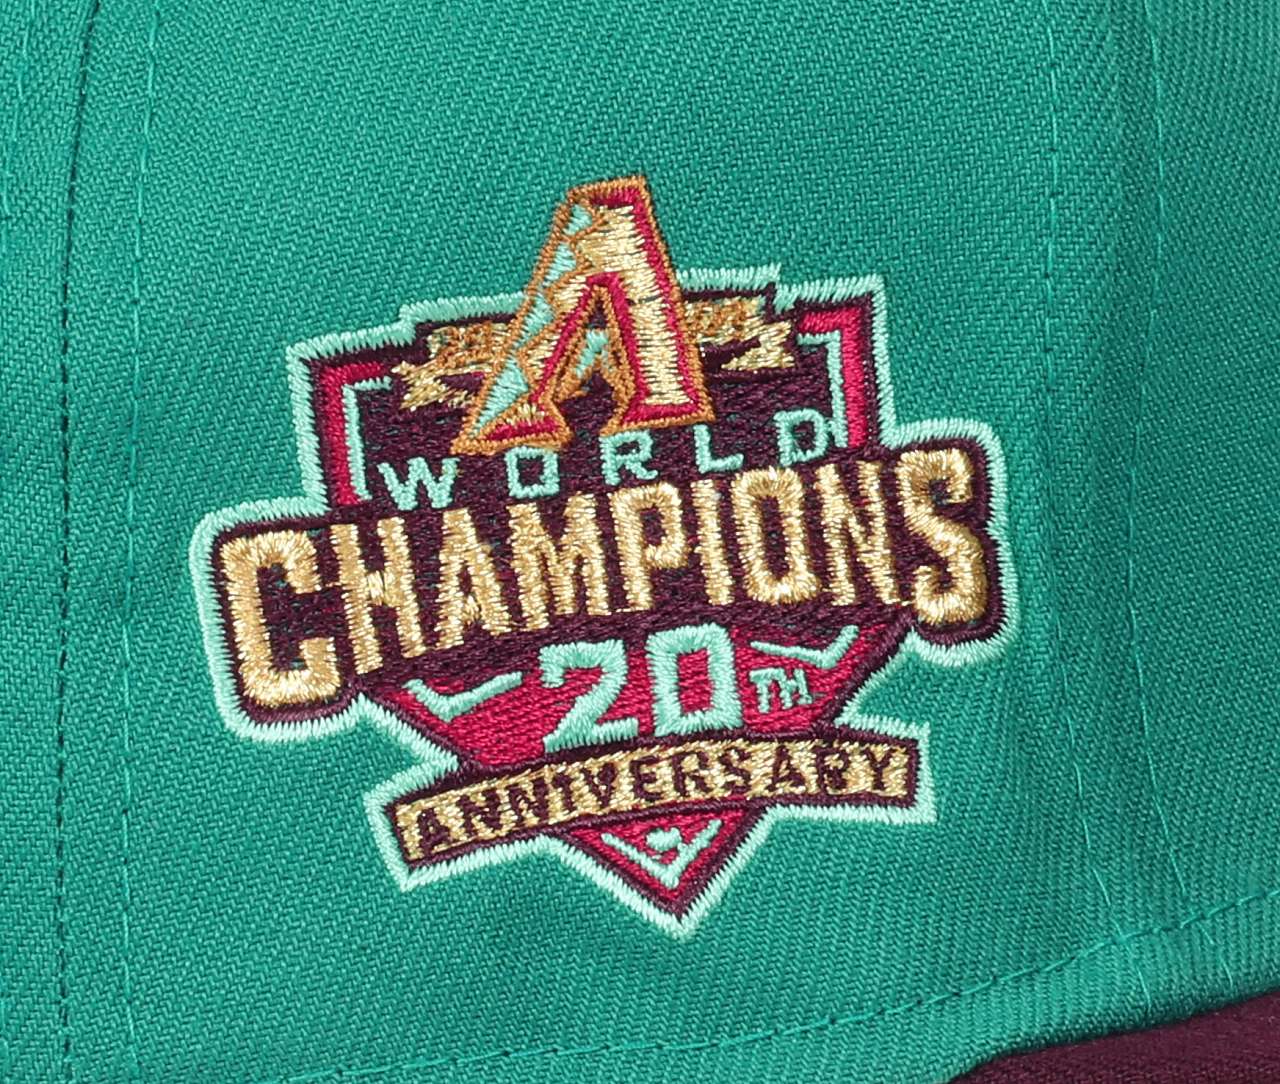 Arizona Diamondbacks MLB World Champions 20th Anniversary Aqua Maroon 59Fifty Basecap New Era